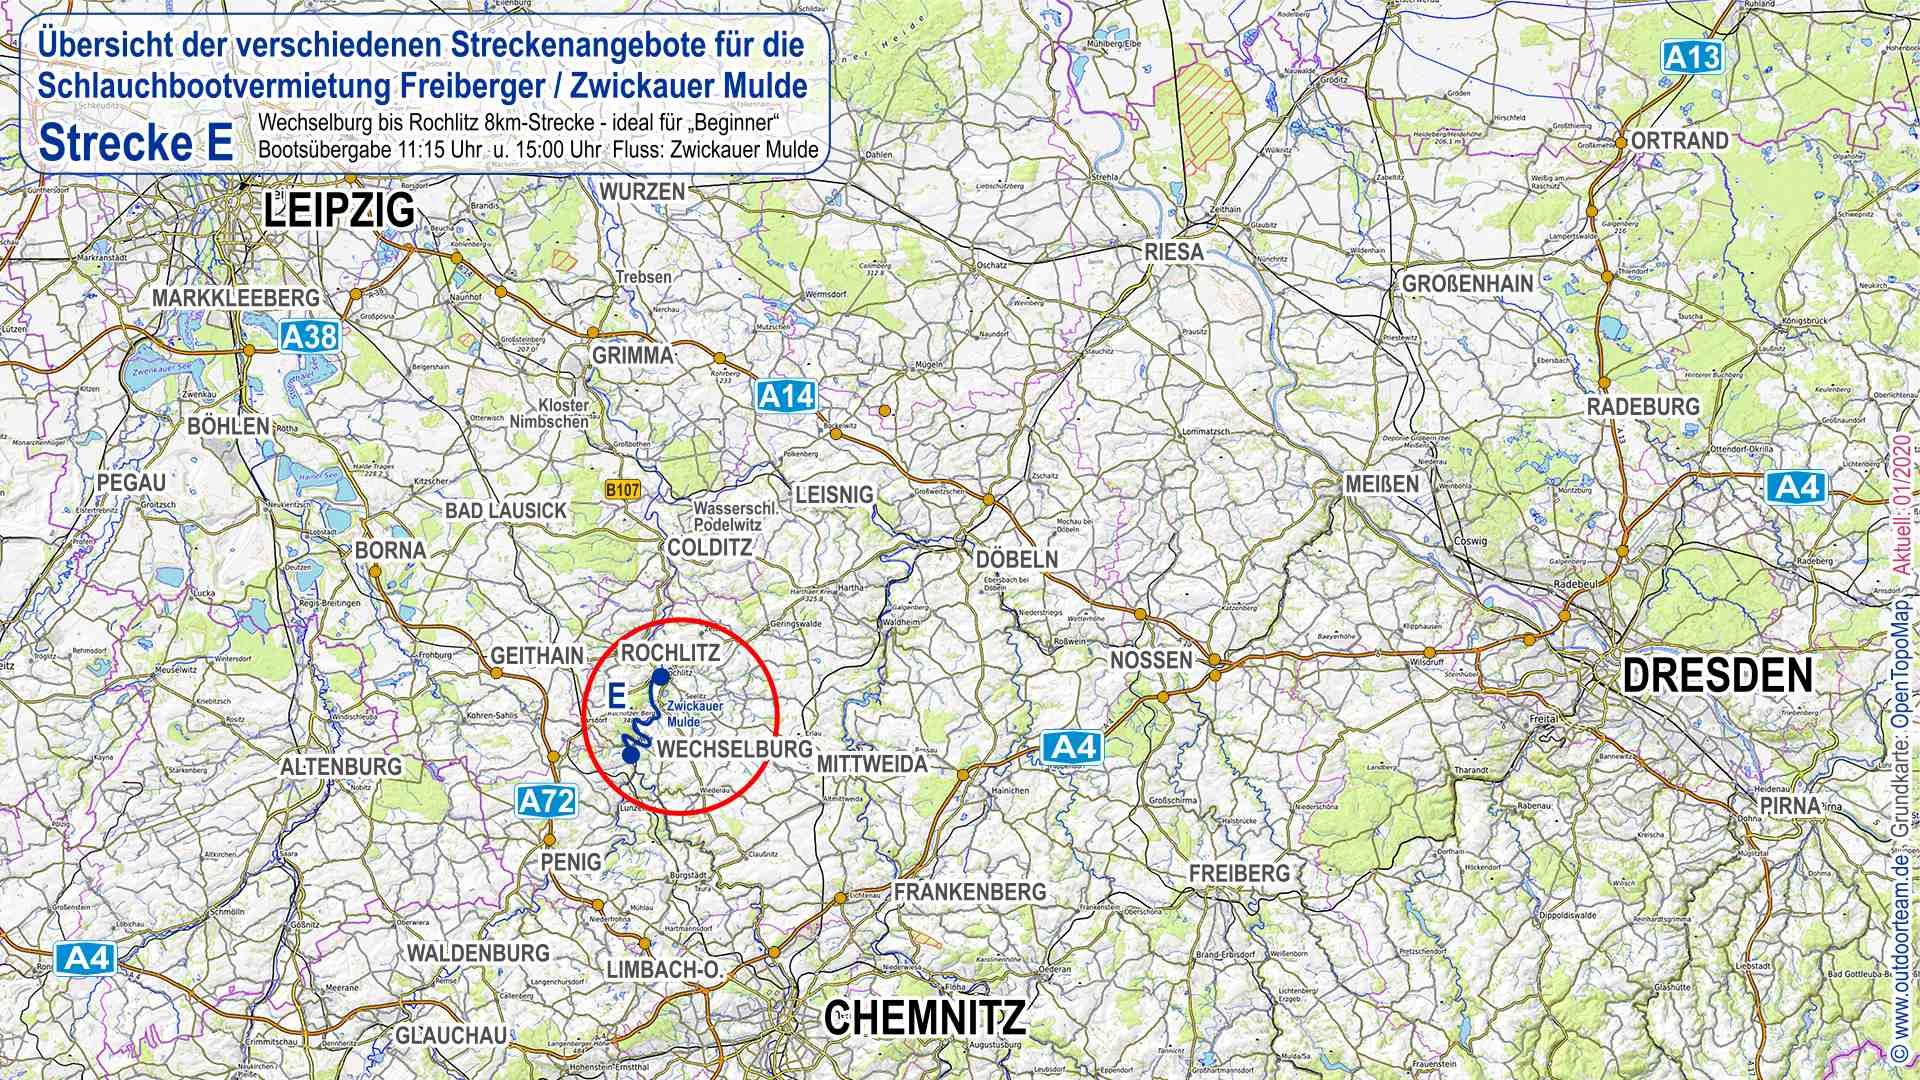 Übersichtskarte Sachsen - rot eingekreist die Schlauchbootvermietung Strecke "E" von Wechselburg nach Rochlitz - Fluss Zwickauer Mulde